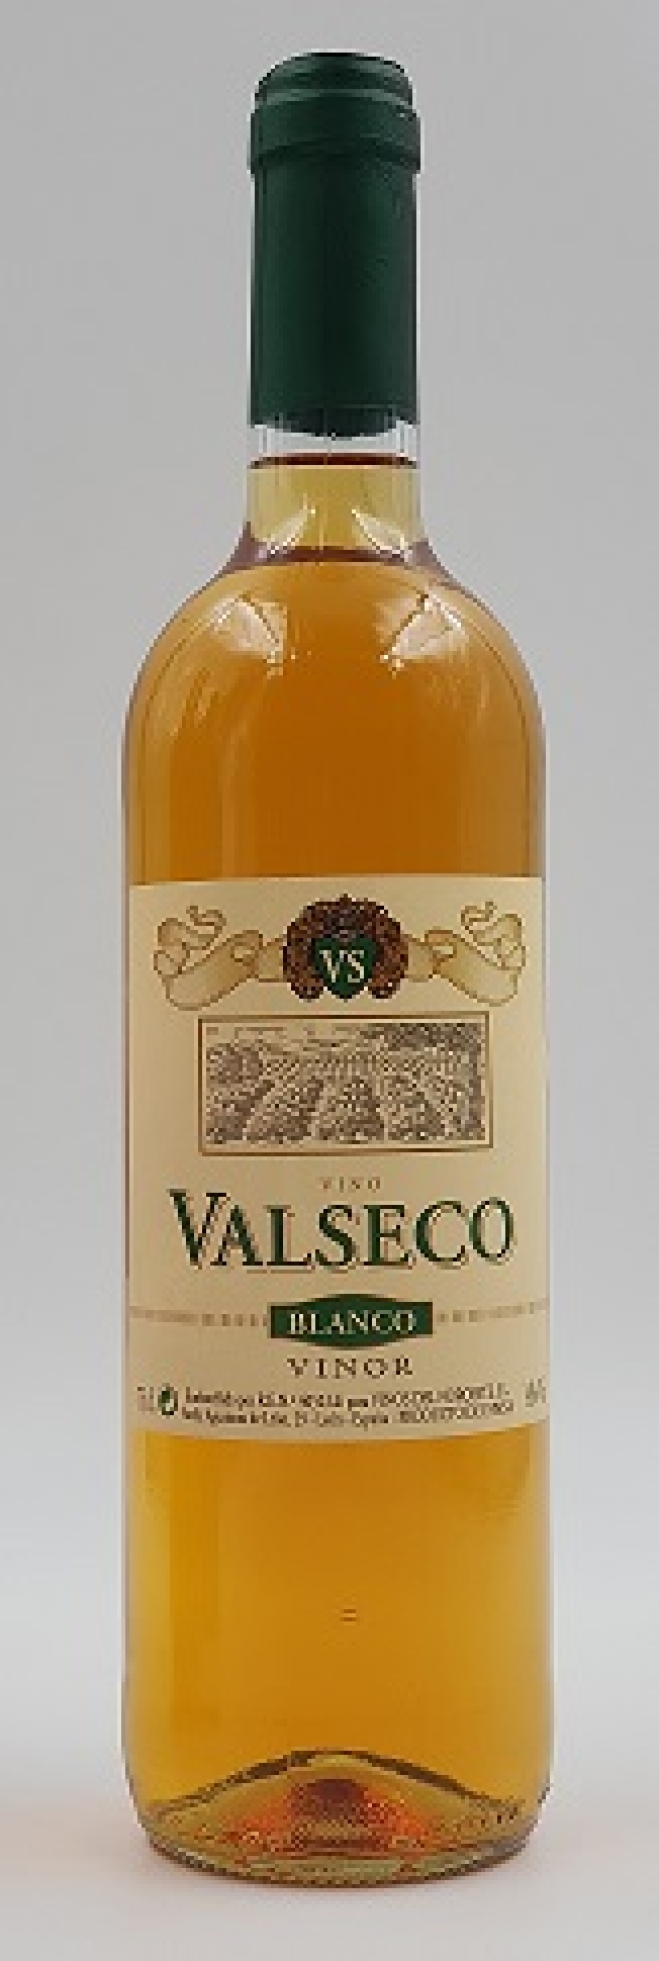 Valseco Blanco